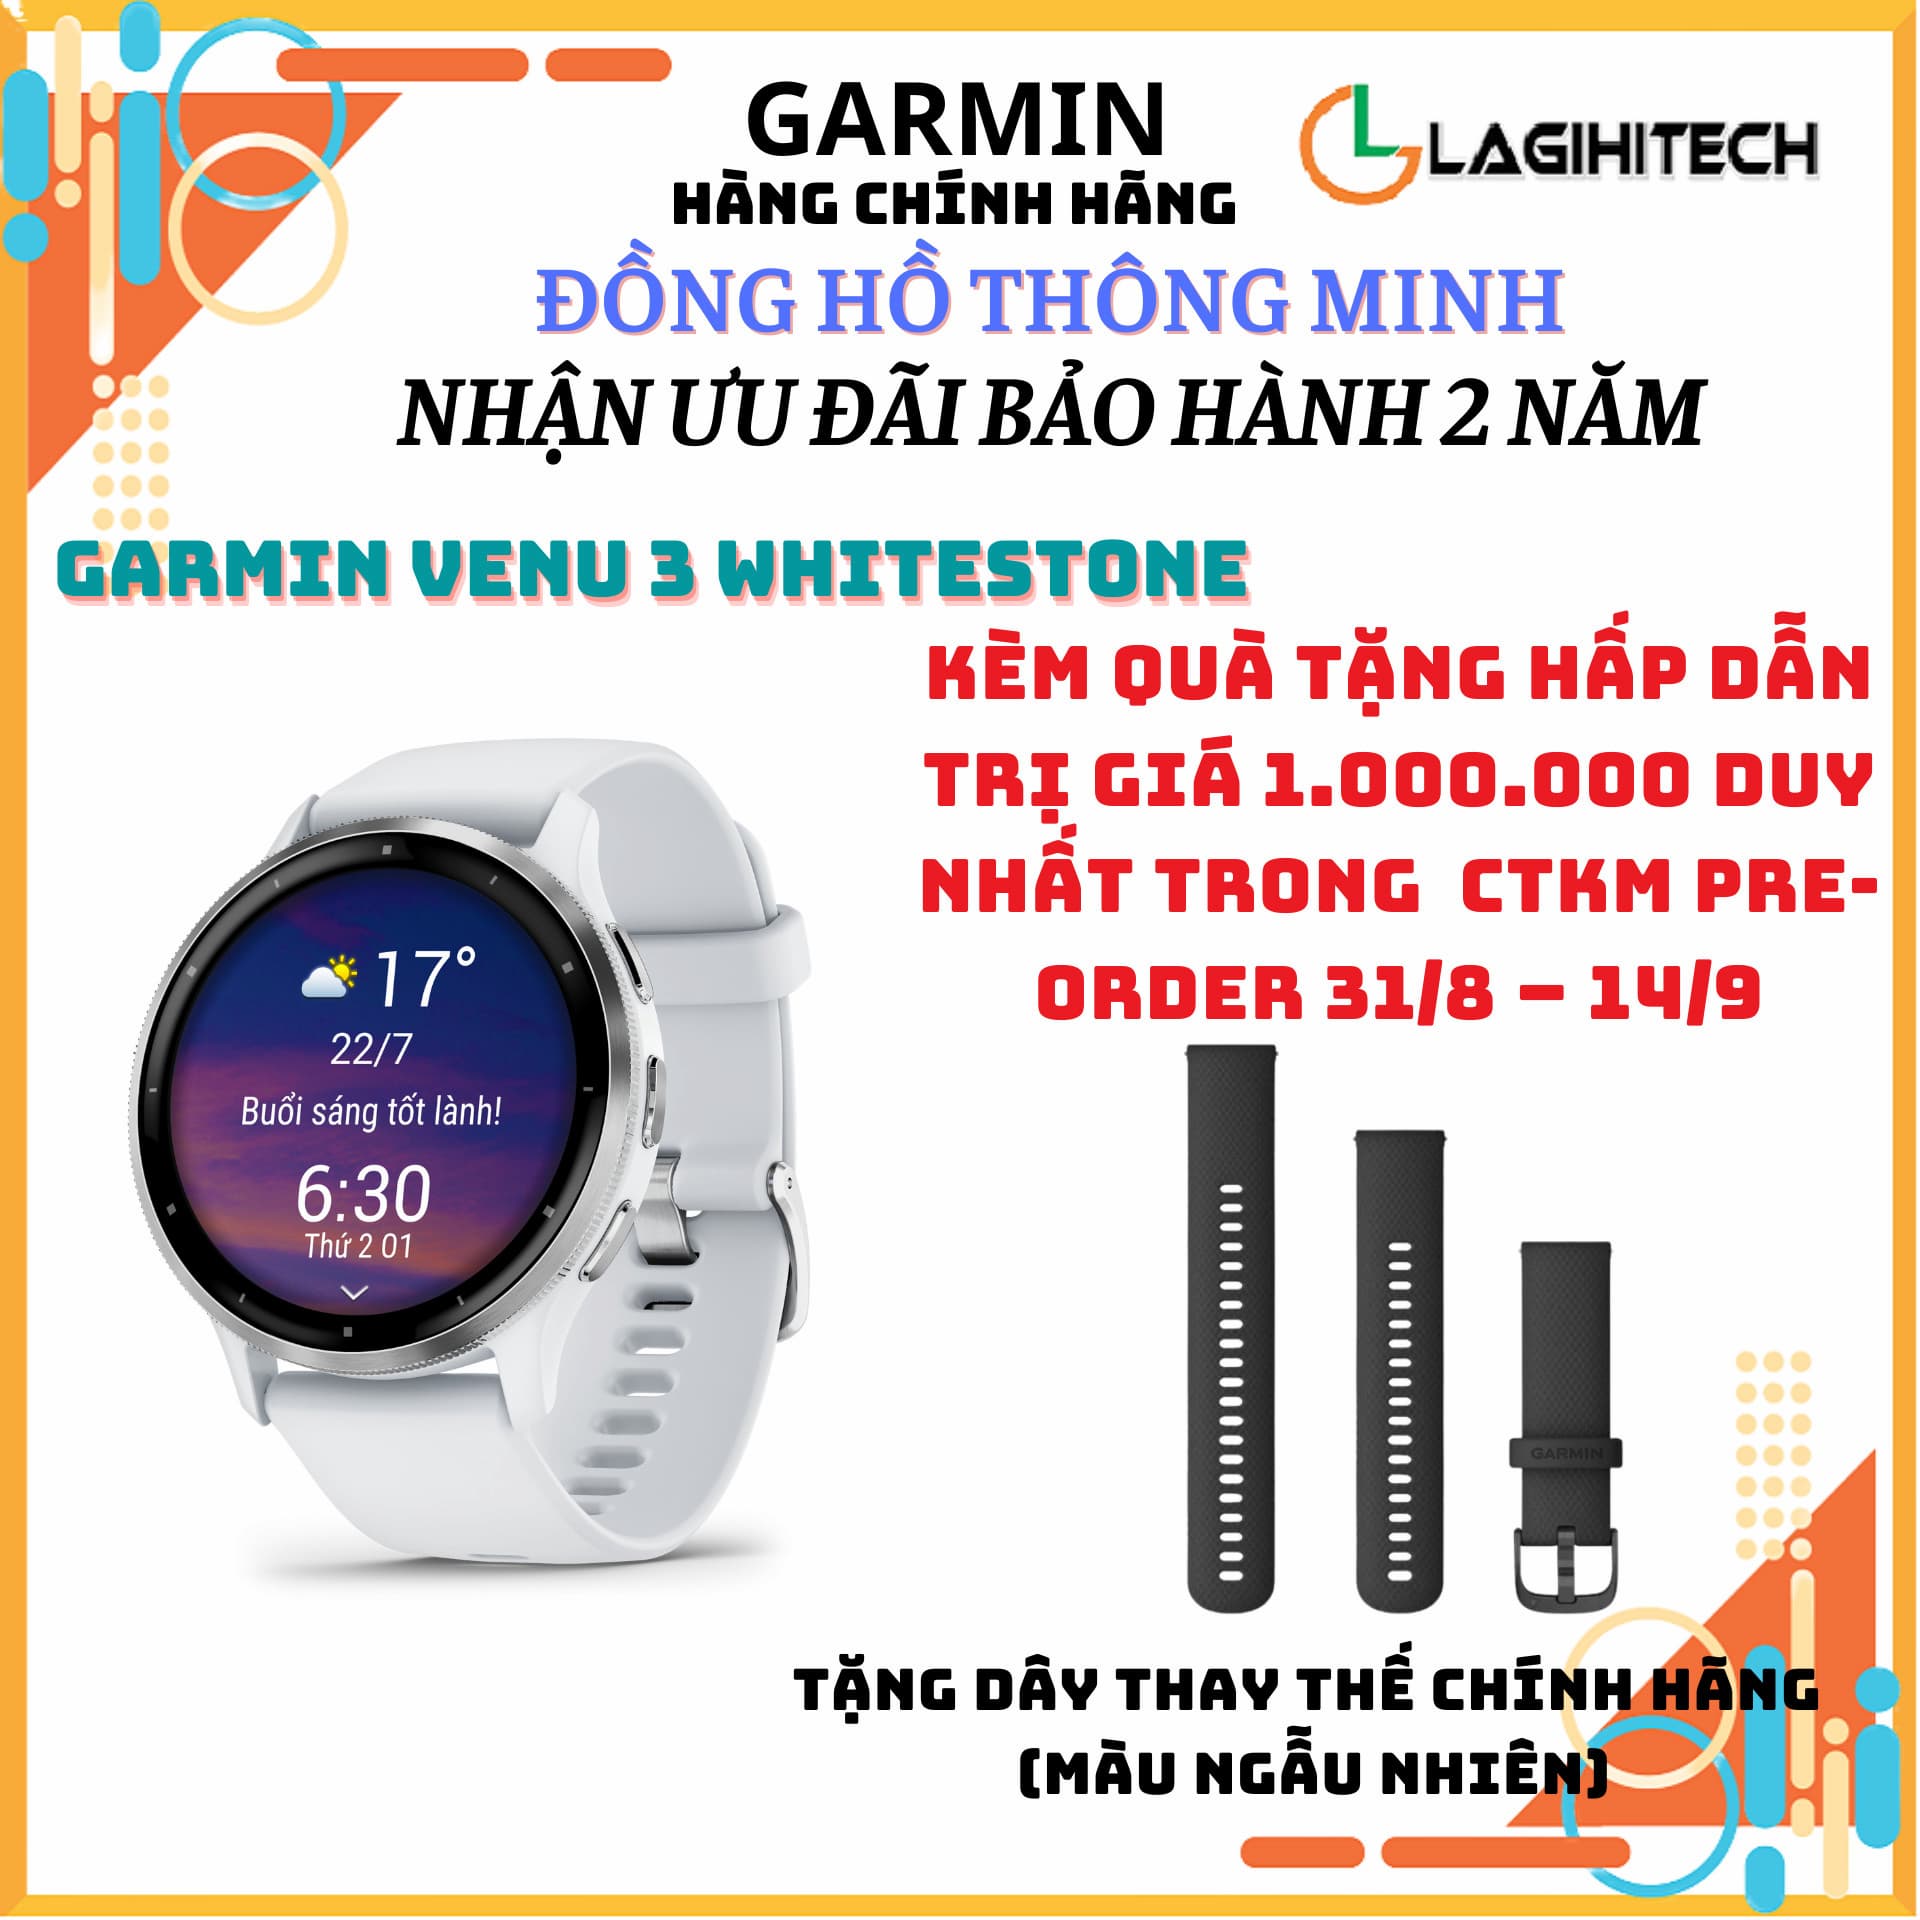 Top đồng hồ thông minh giá rẻ mới nhất chỉ từ 300.000 đồng | websosanh.vn